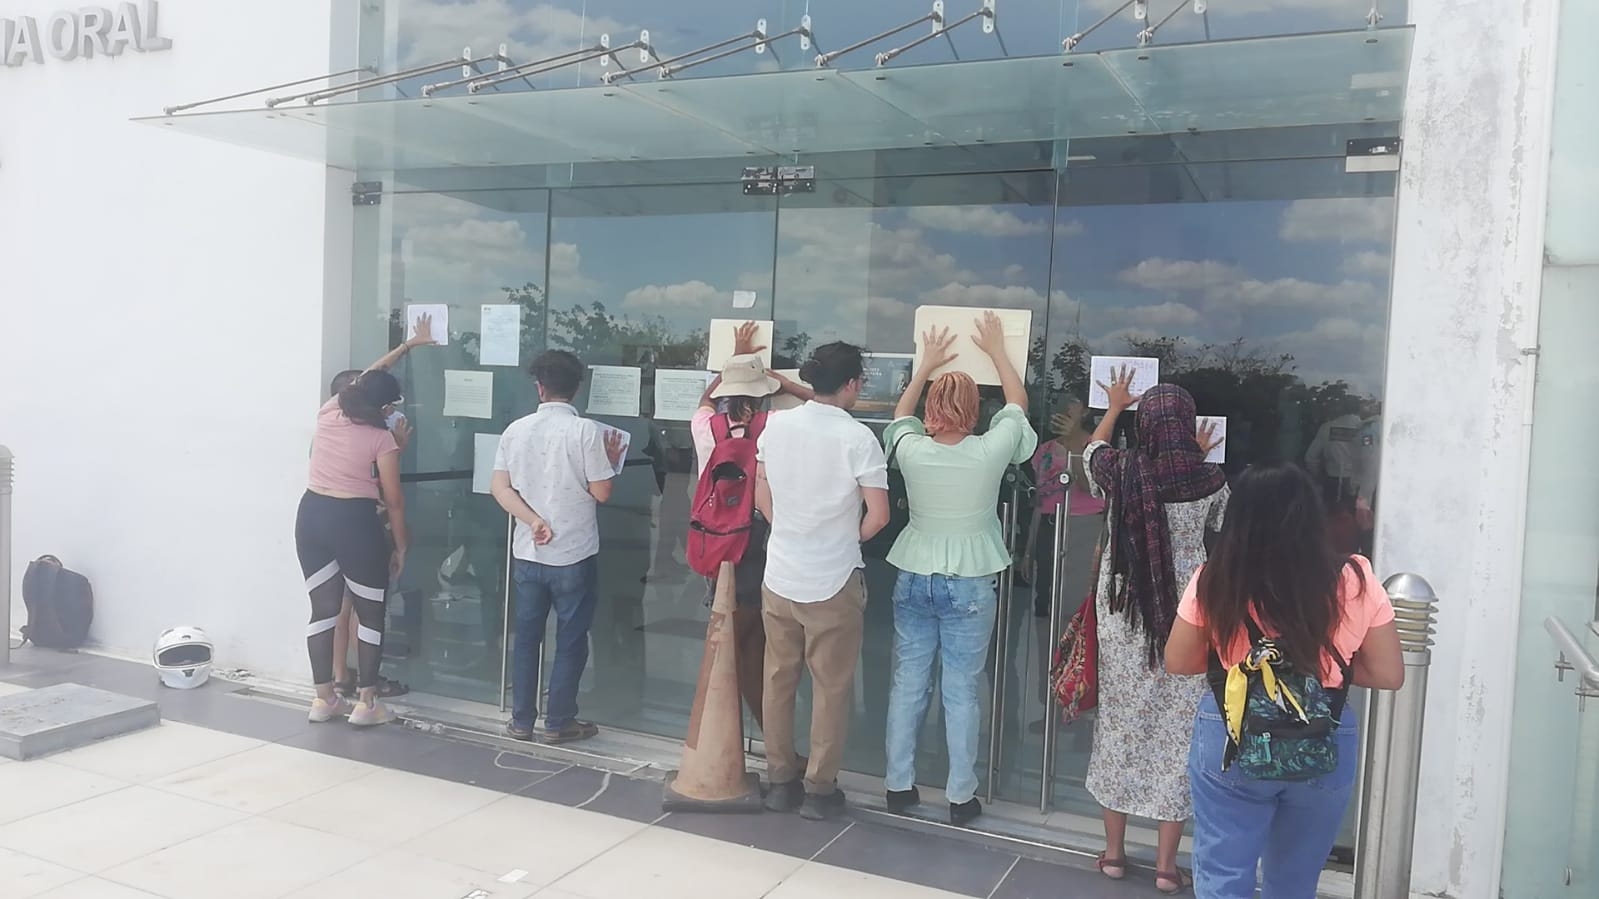 Manifestantes buscan entrar al Centro de Justicia Oral de Mérida para apoyar a los detenidos